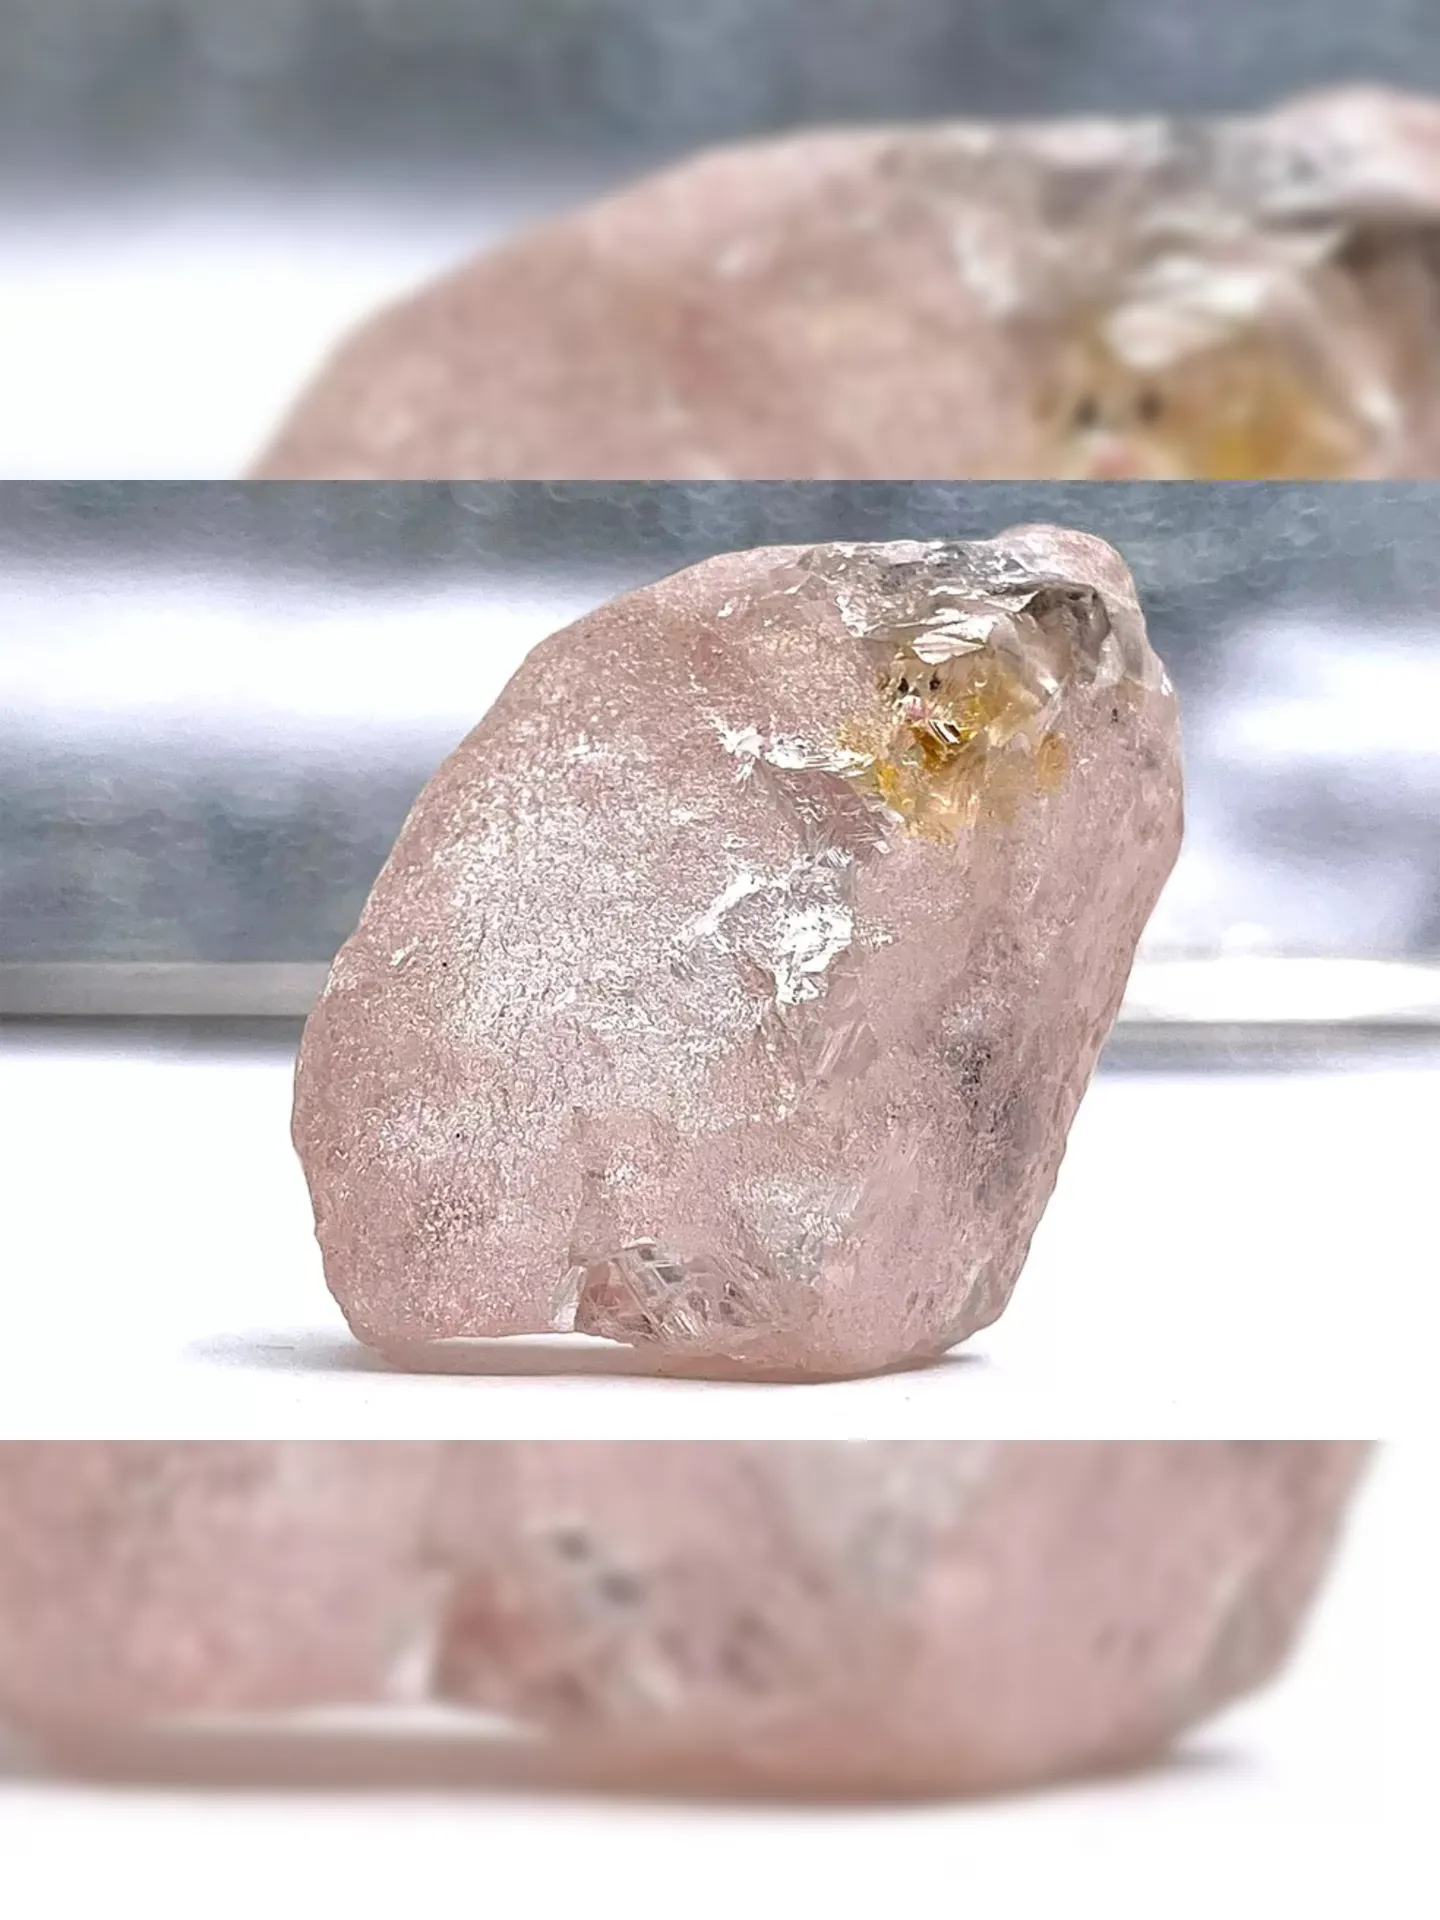 Imagem ilustrativa da imagem Mineiros de Angola encontram raro diamante rosa